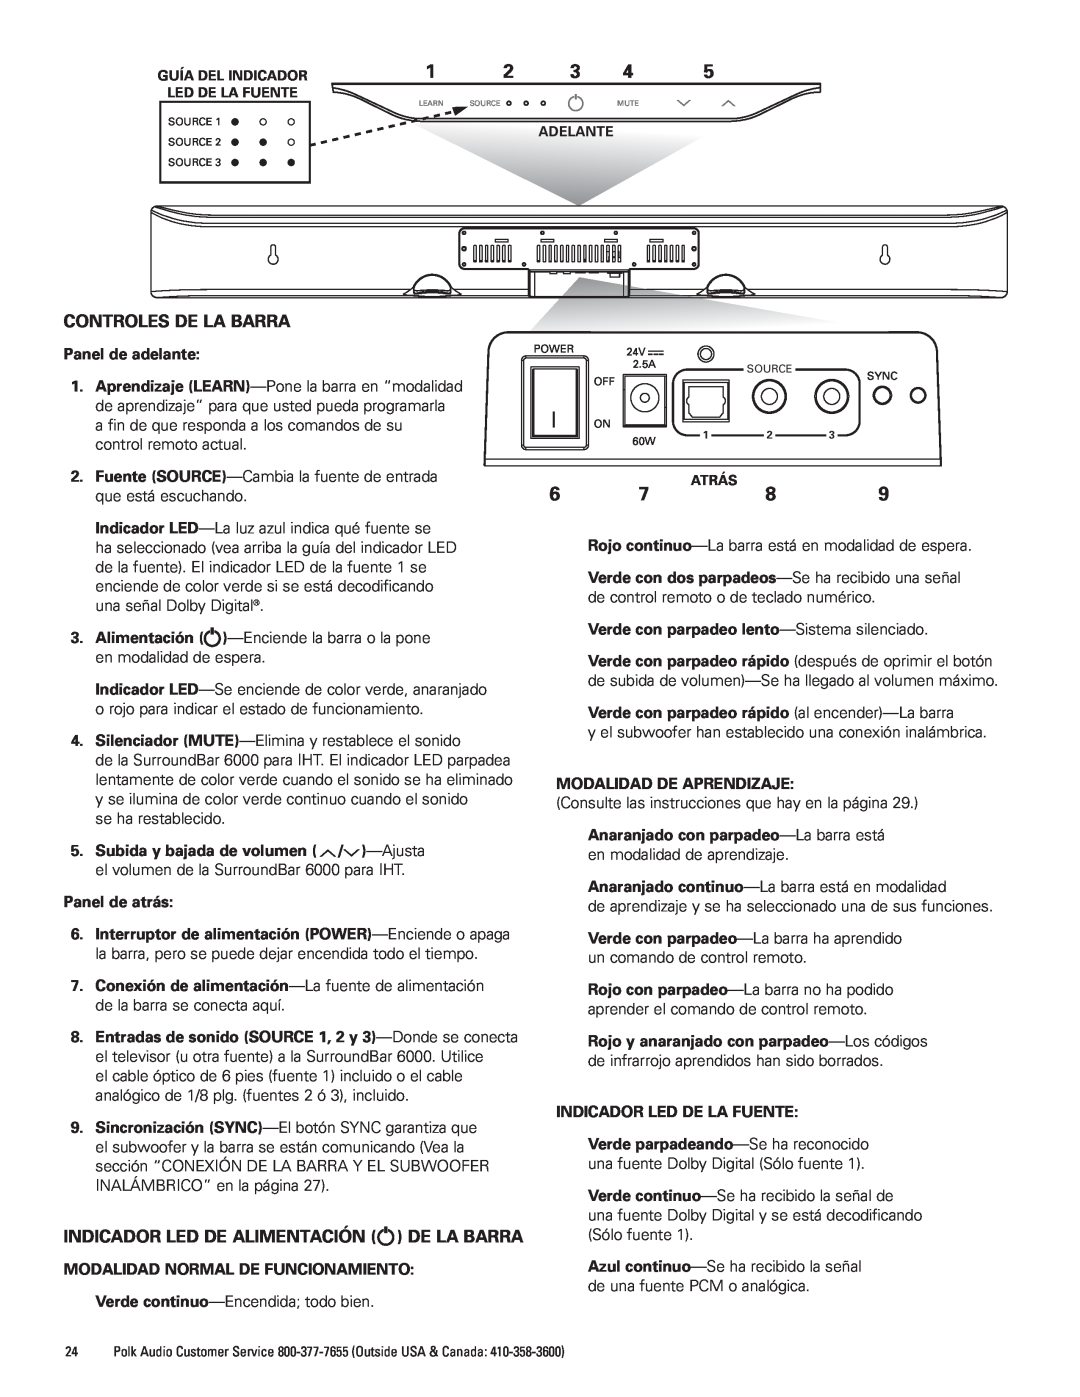 Polk Audio AM1600-A manual Controles De La Barra, Indicador Led De Alimentación De La Barra 